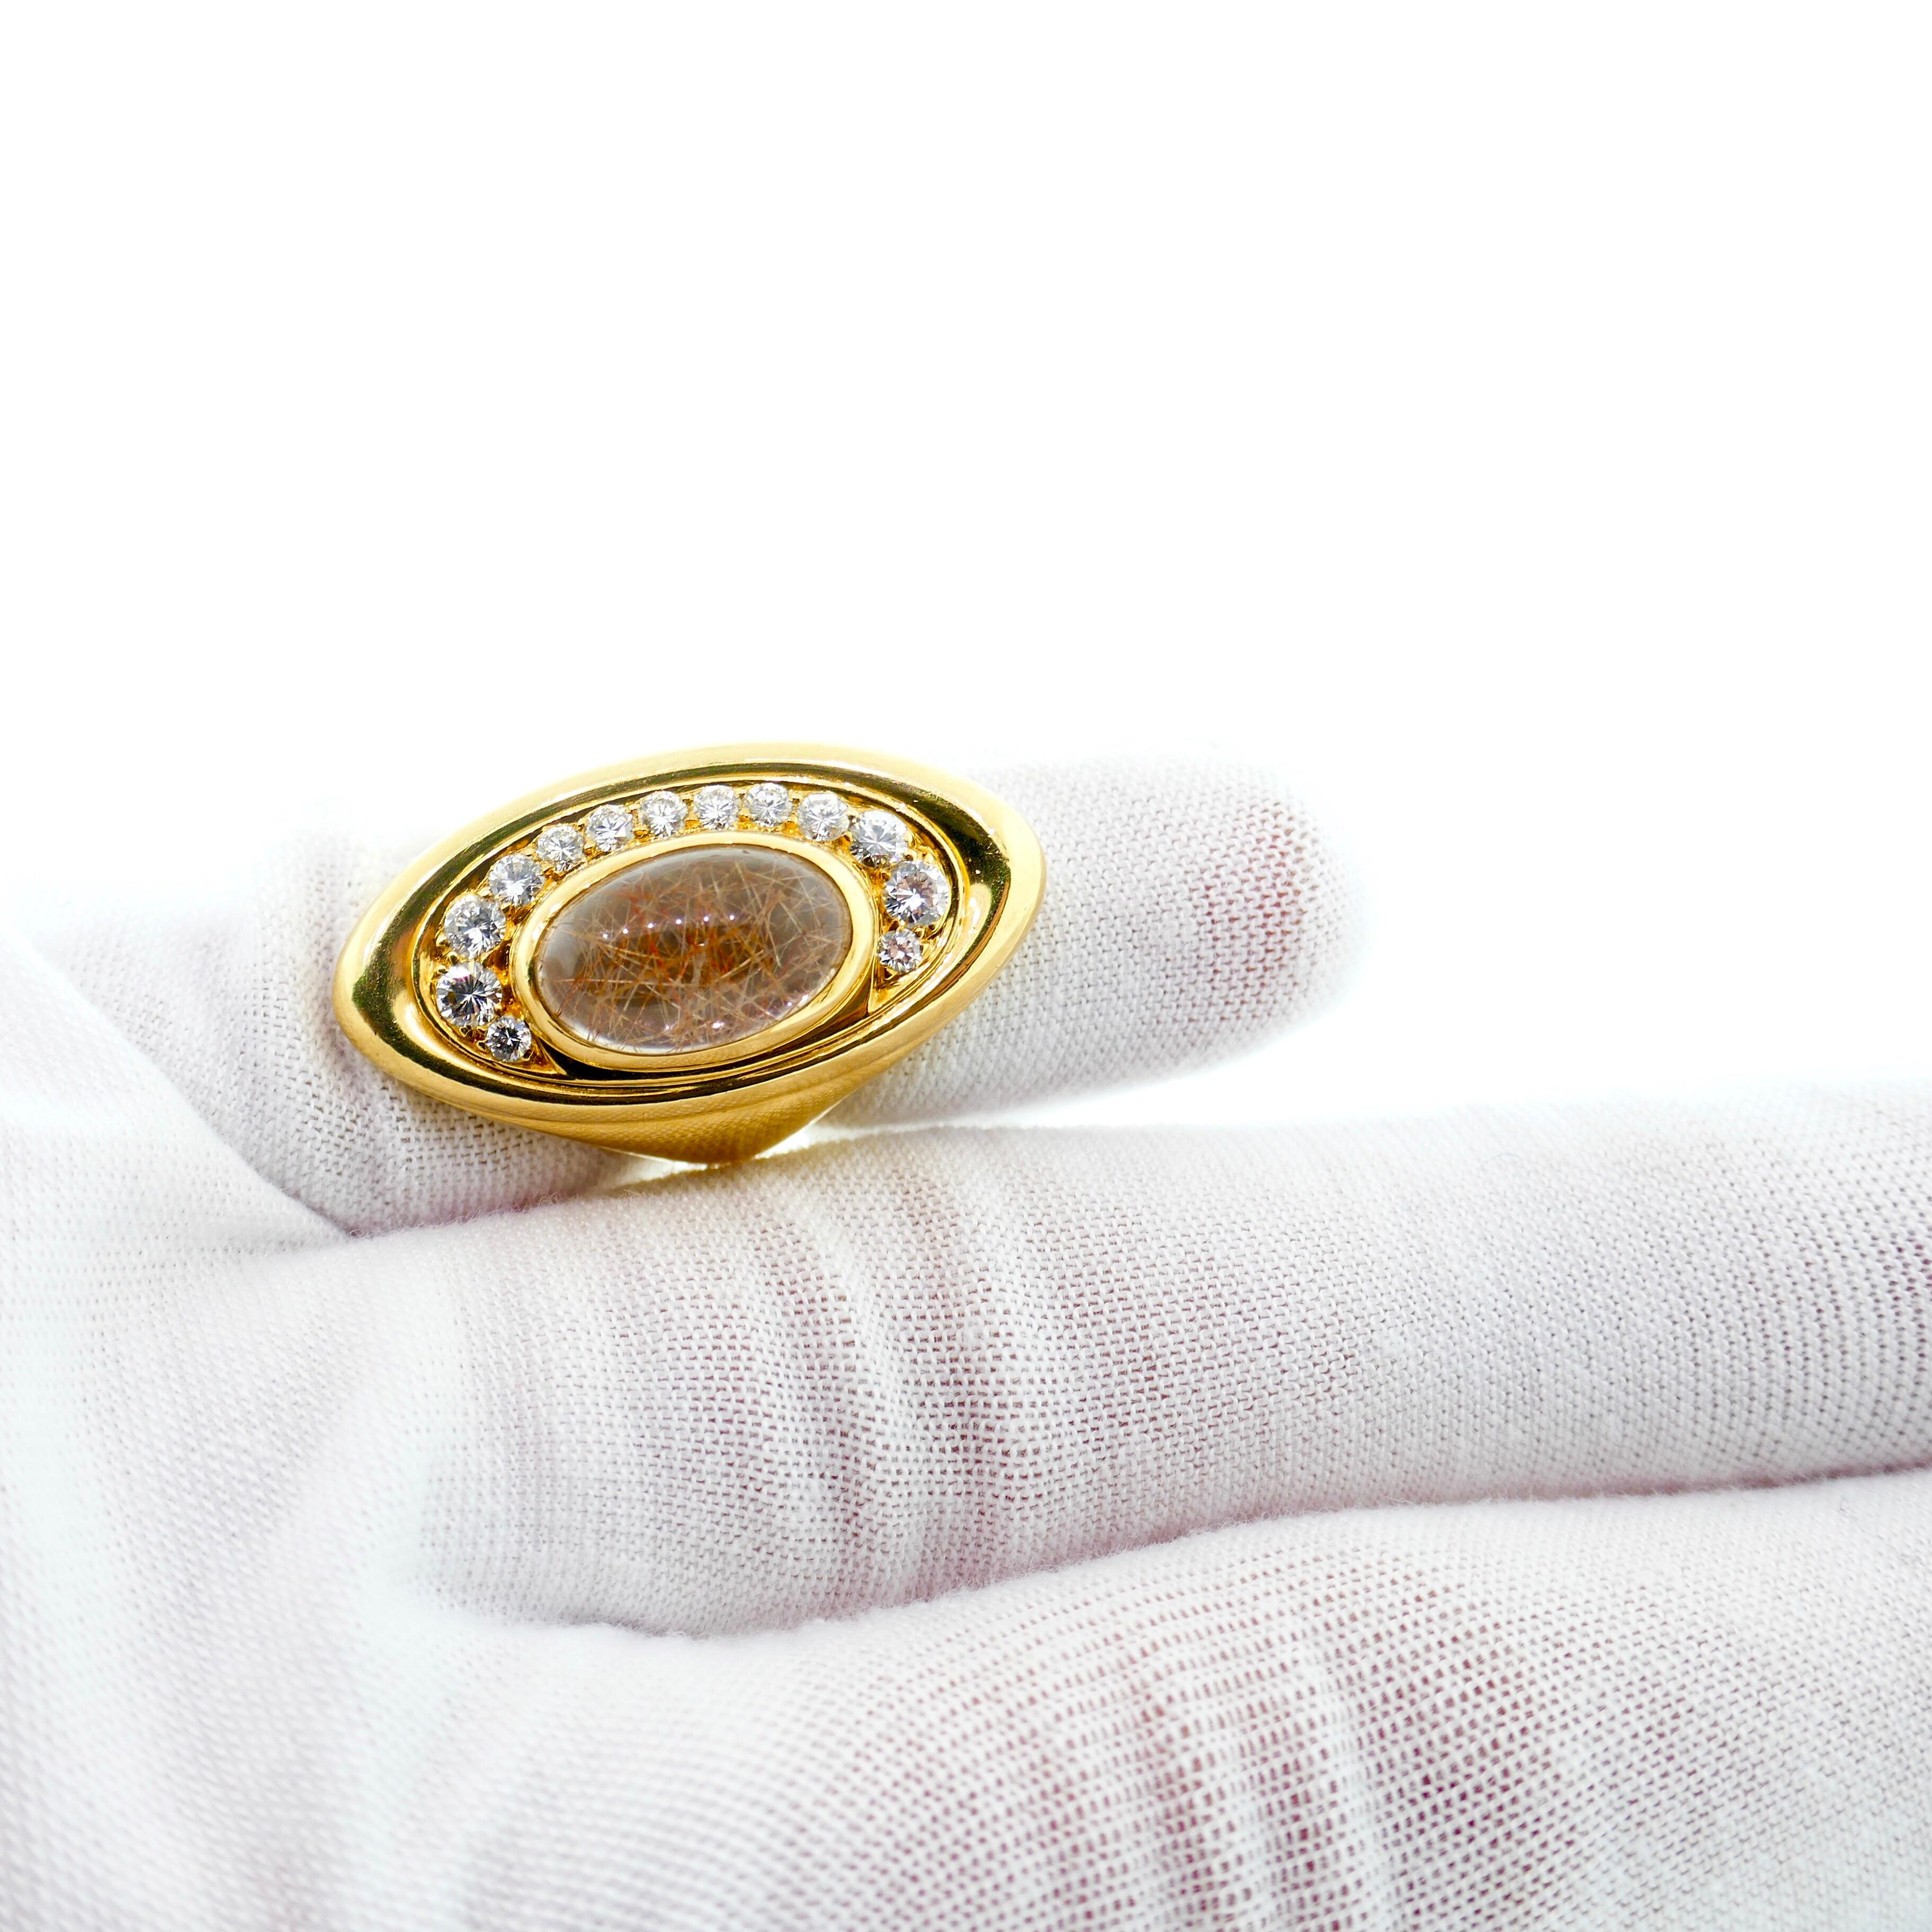 Bvlgari Yellow Gold, Quartz, and Diamond Ring 1